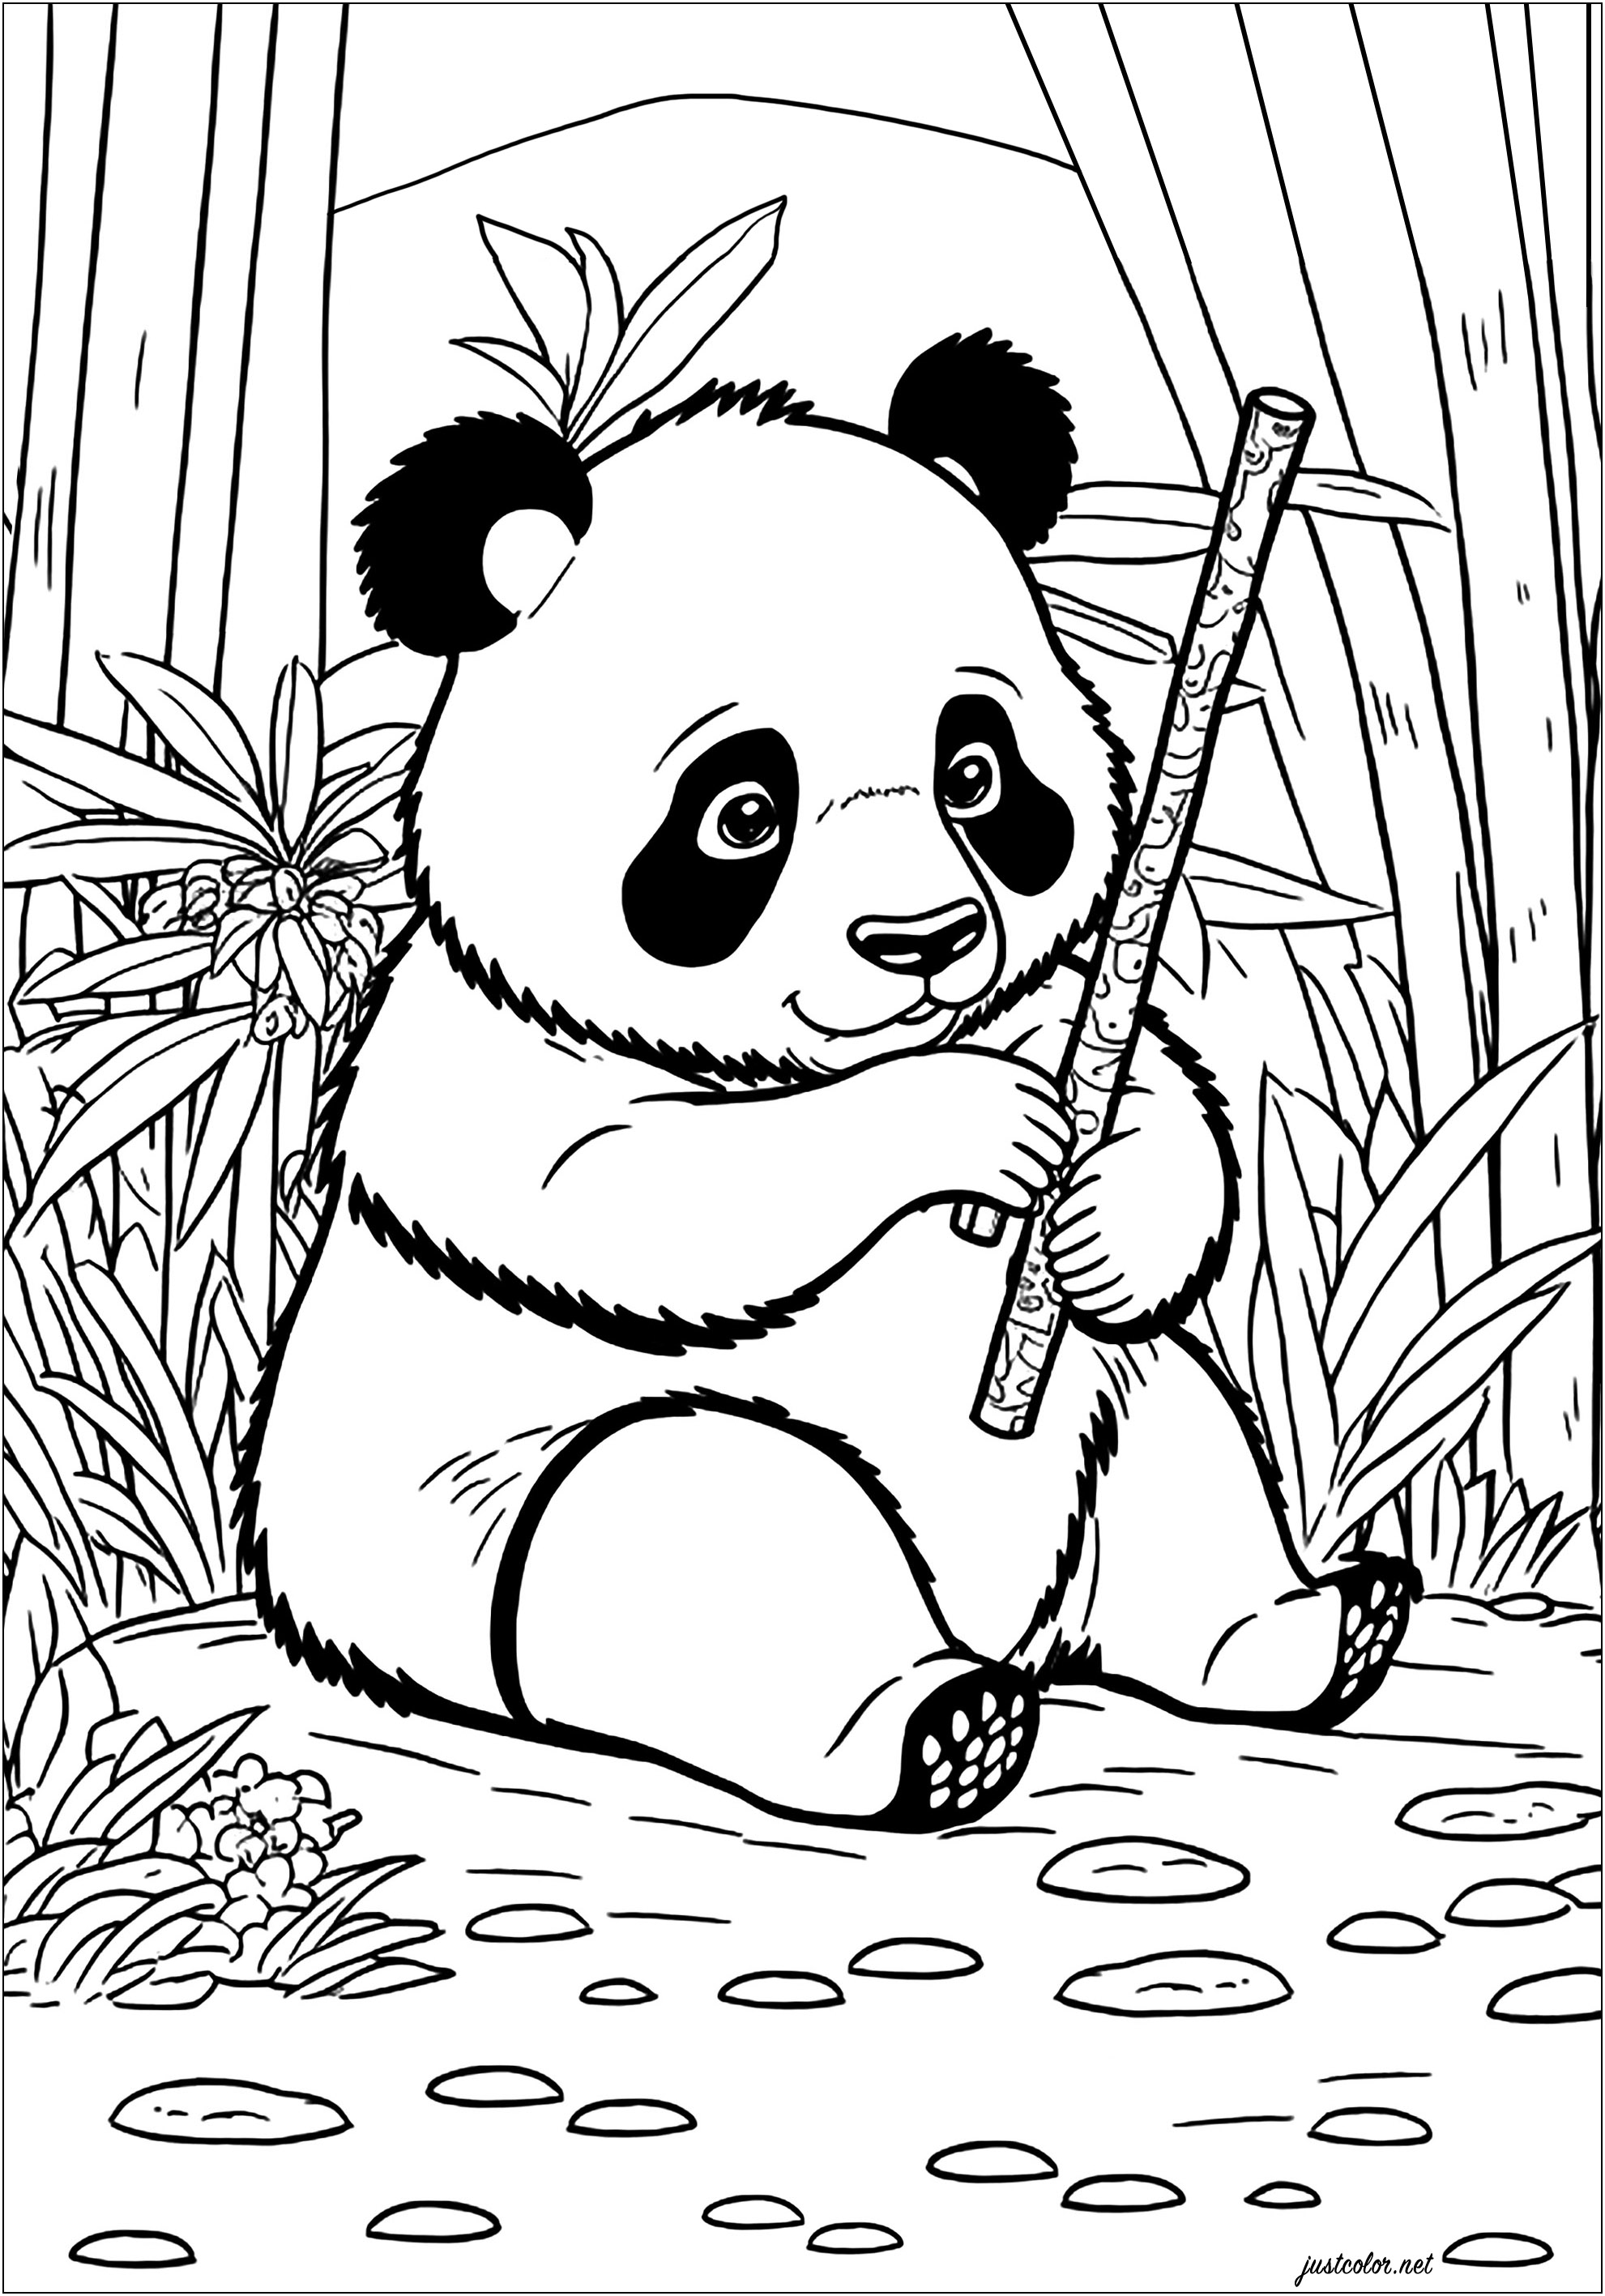 Jeune Panda mangeant du bambou. Ce Panda aux joues rondes et à l'expression amusante est assis dans une forêt luxuriante remplie d'arbres de bambou hauts. Il mange joyeusement un tige de bambou, il a l'air d'avoir très faim !, Artiste : IAsabelle